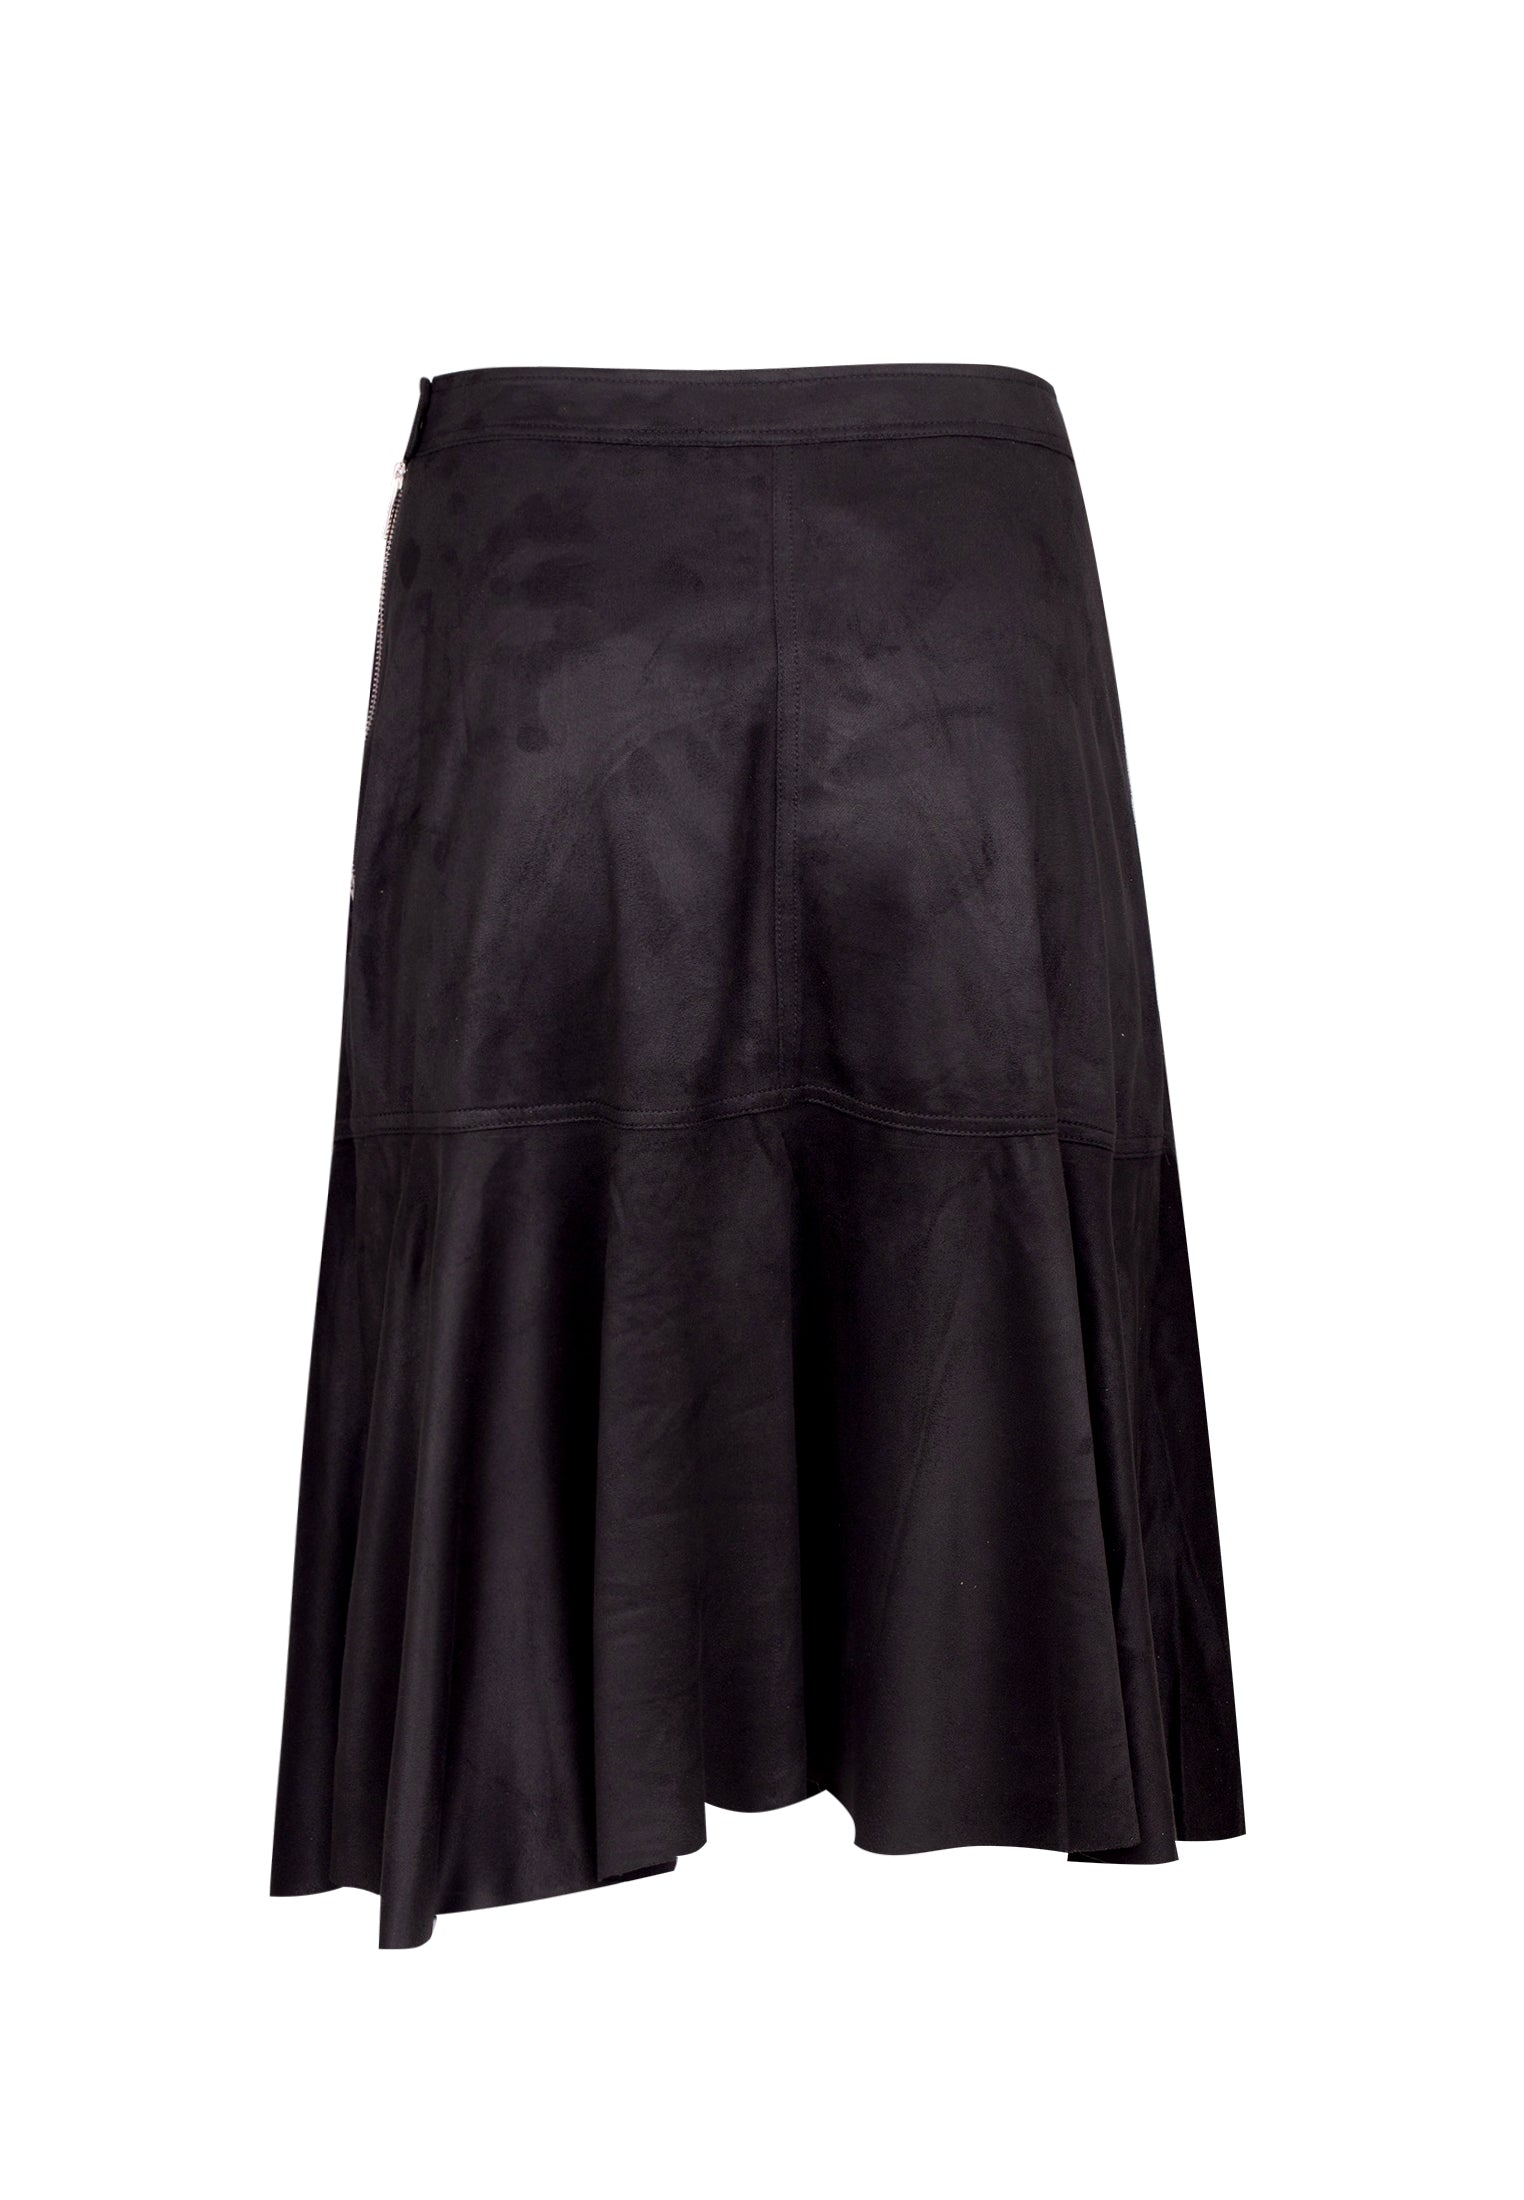 RELIGION Eon Faux Suede Black Midi Skirt